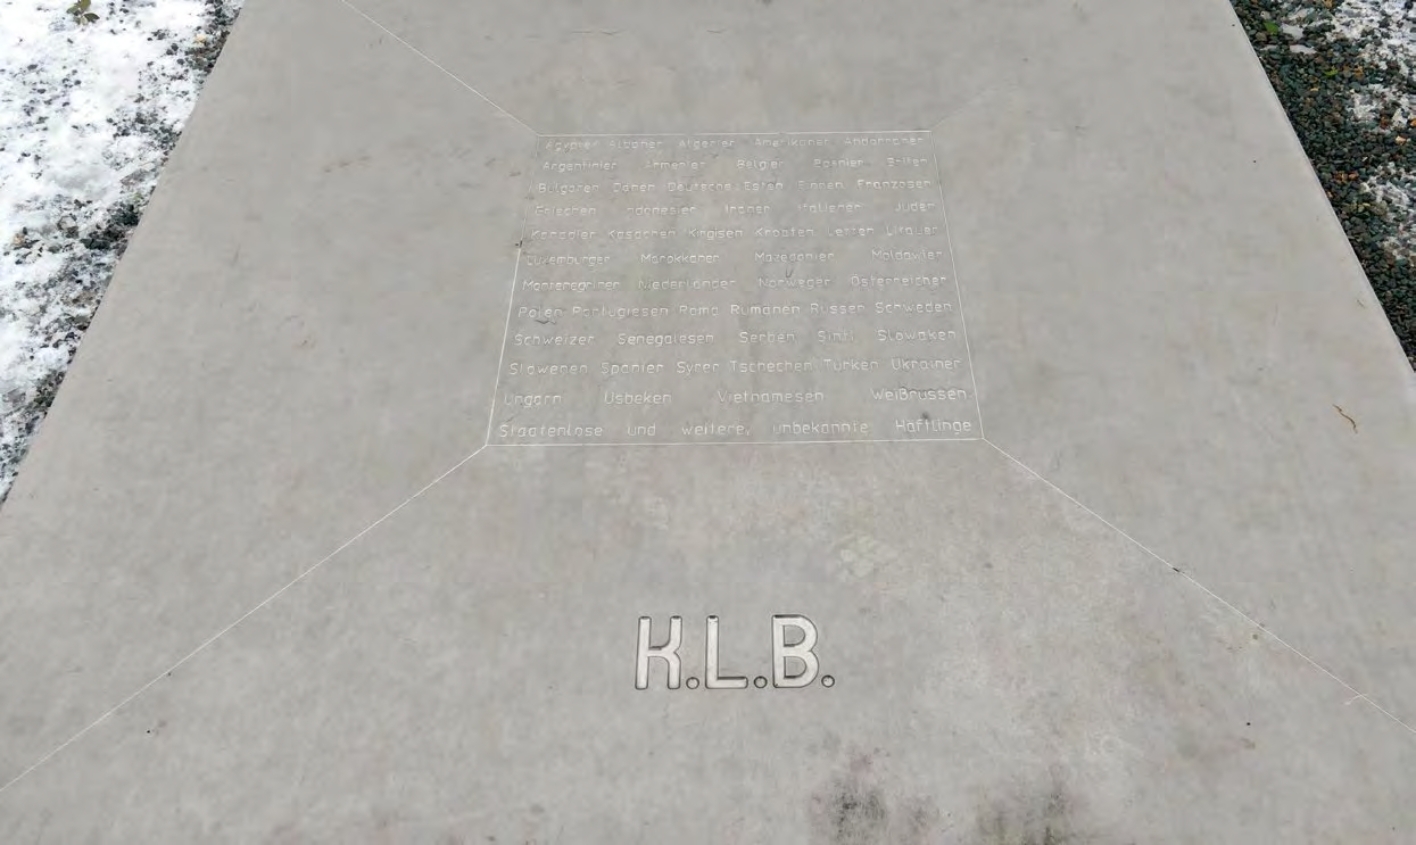 Gedenkzeichen von Nahem: graue Platte, in der Mitte Gravur "K.L.B." und 53 Nationalitäten